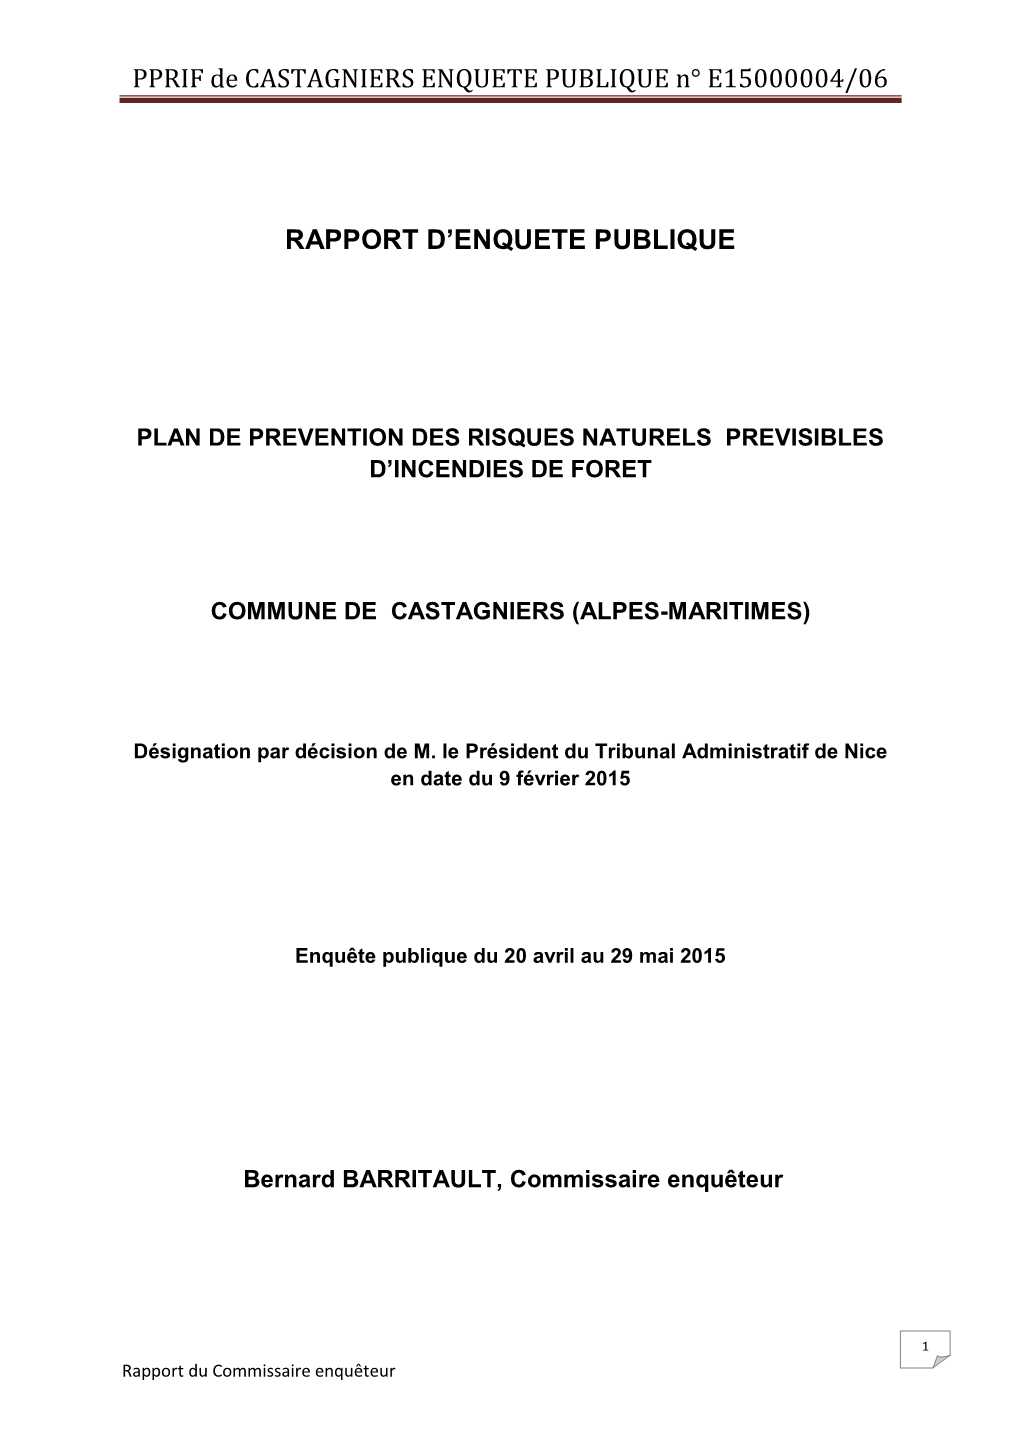 PPRIF De CASTAGNIERS ENQUETE PUBLIQUE N E15000004/06